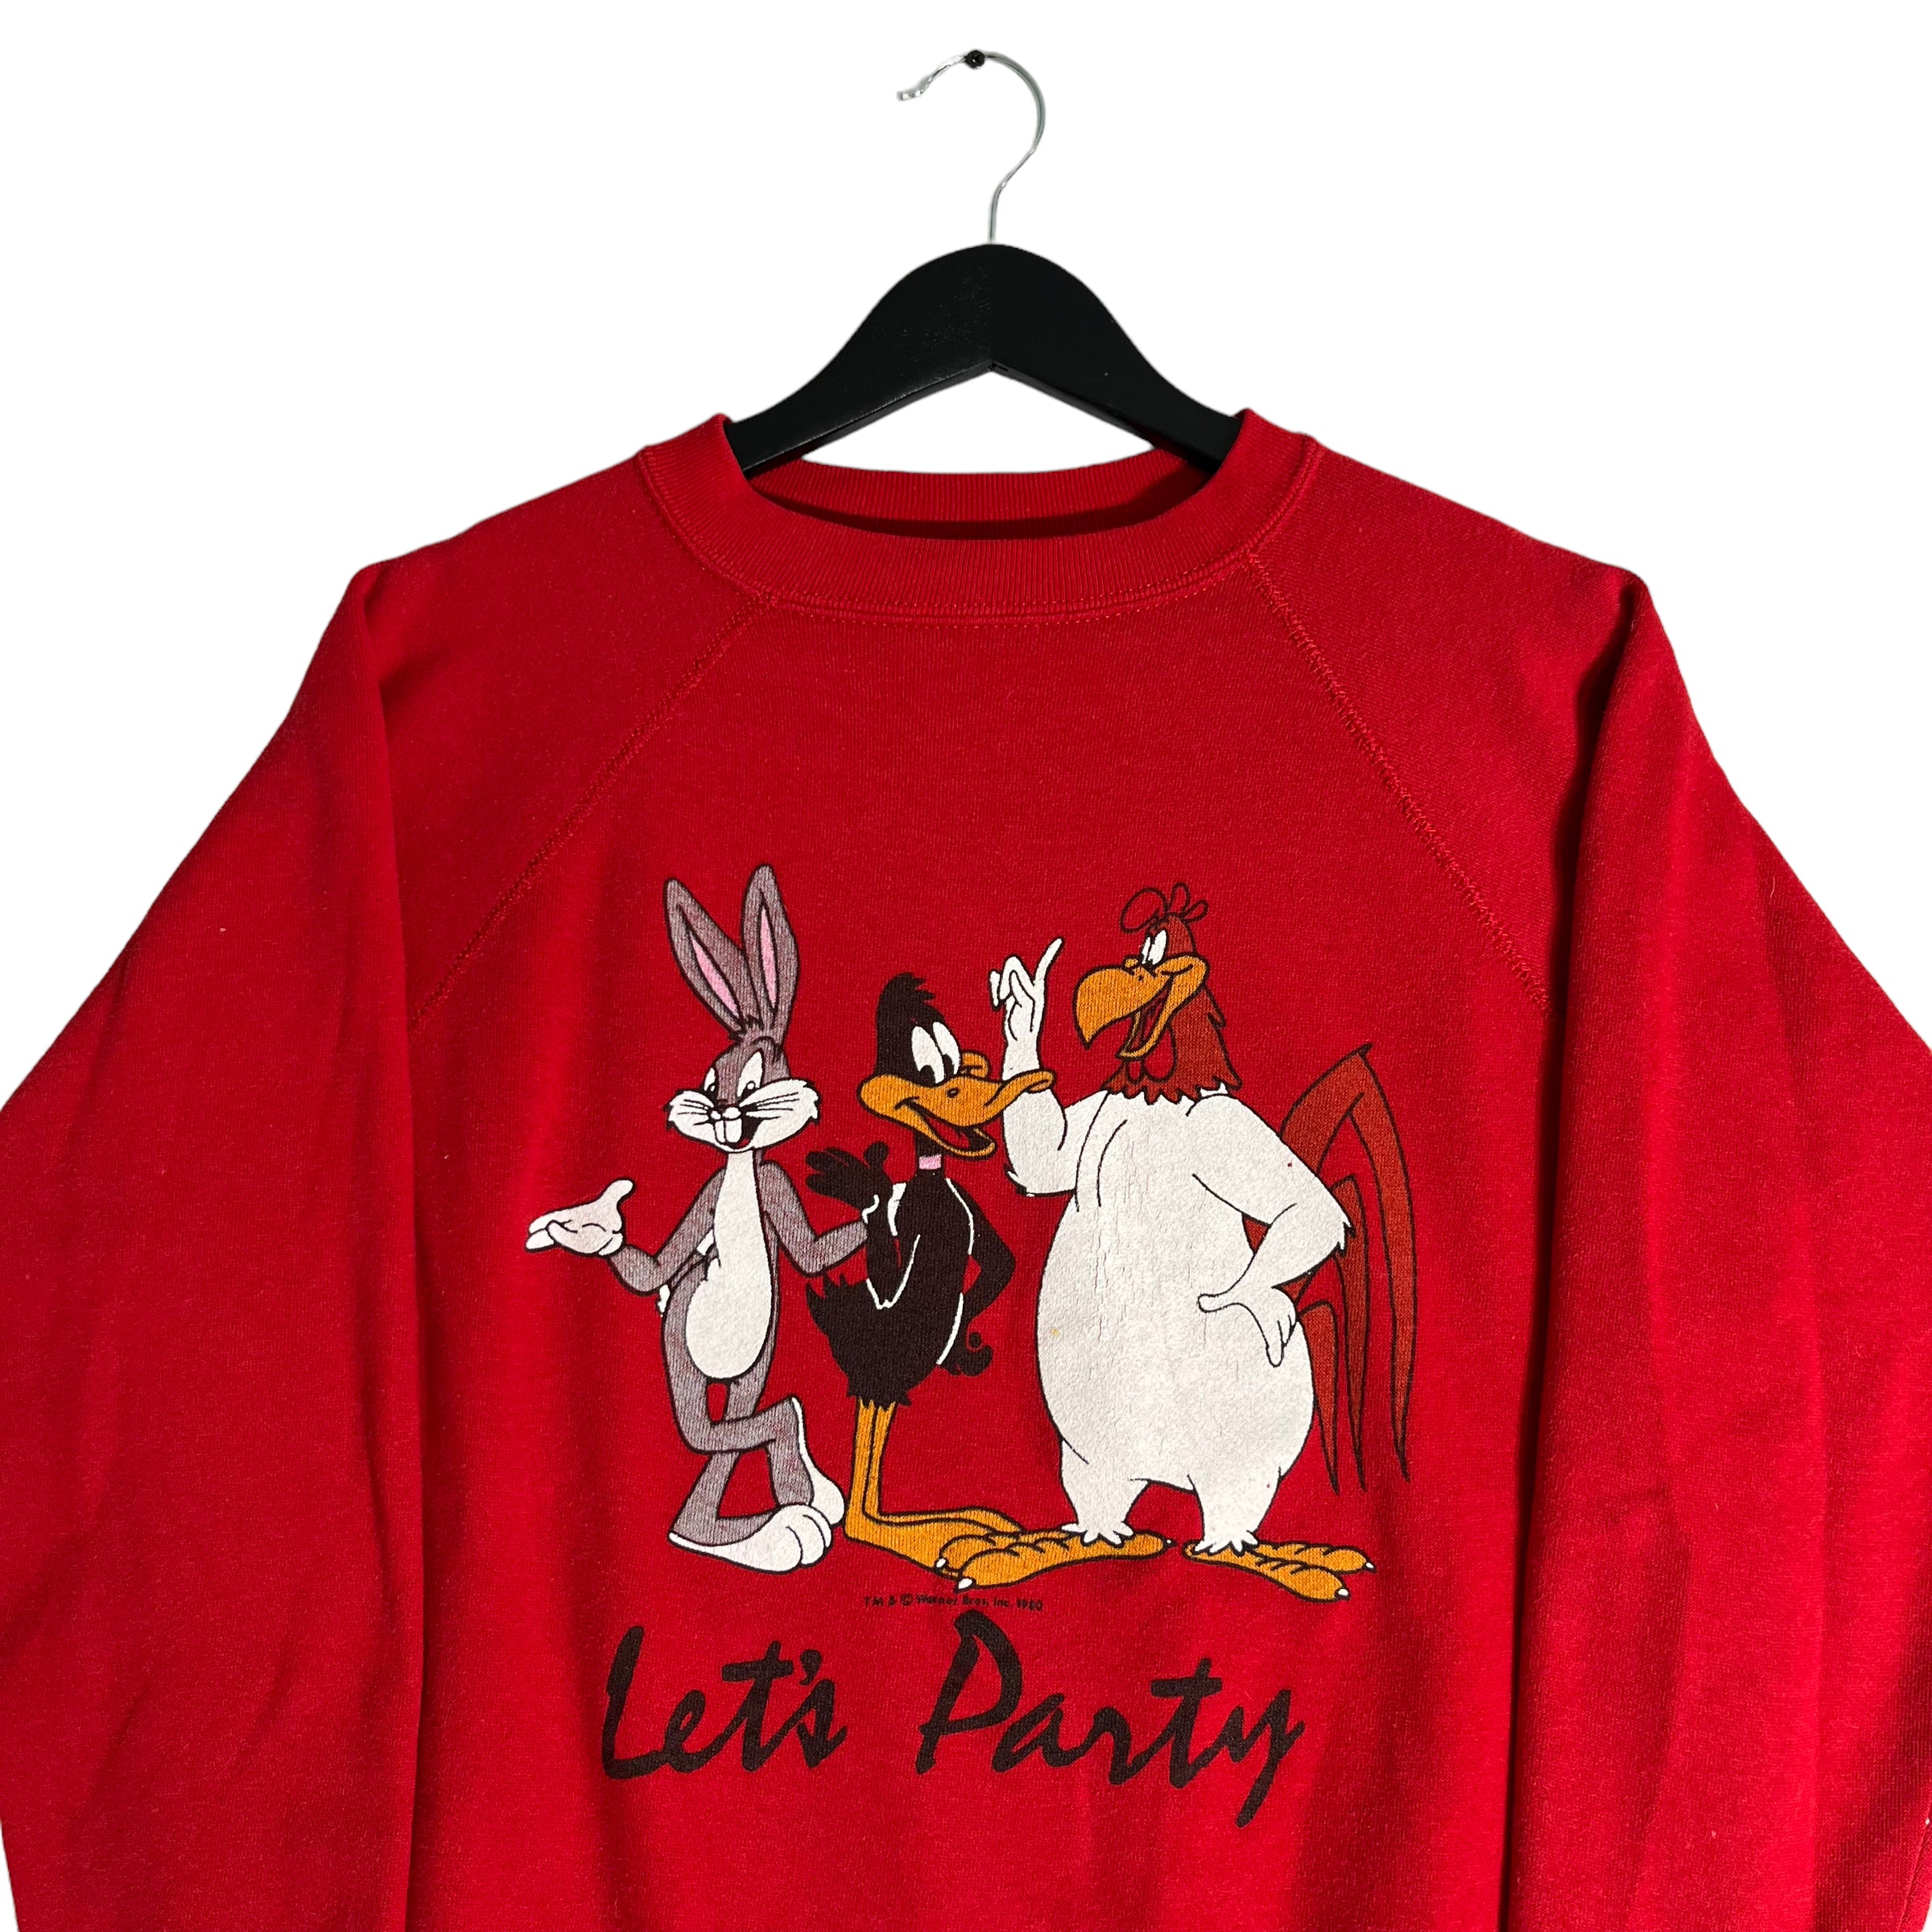 Vintage Looney Tunes "Let's Party" Crewneck 80s